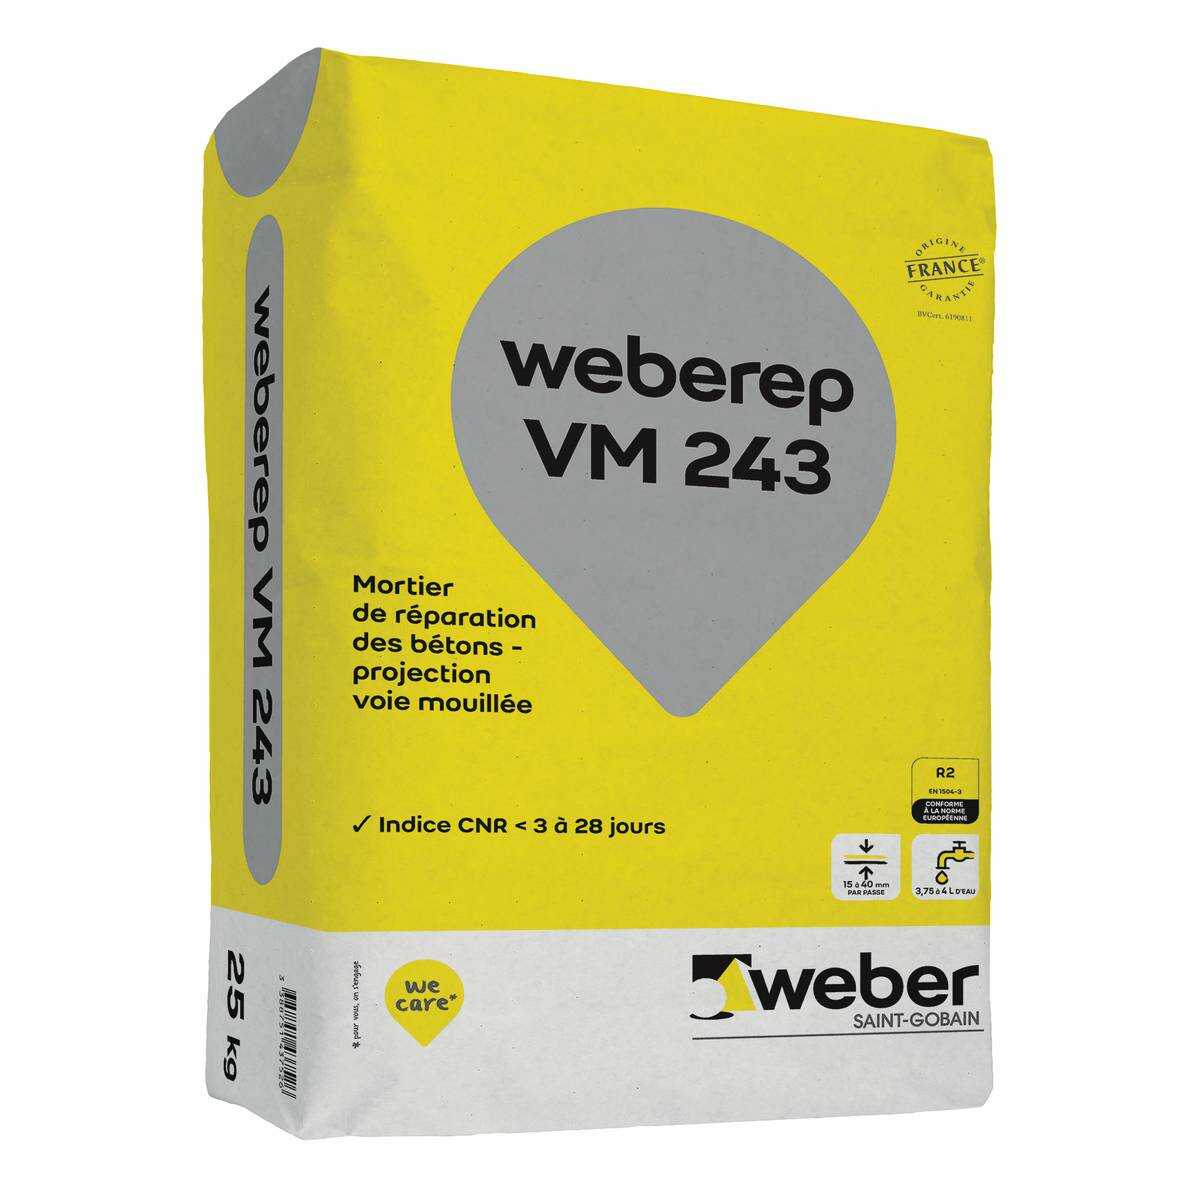 WEBEREP VM 243 25KG